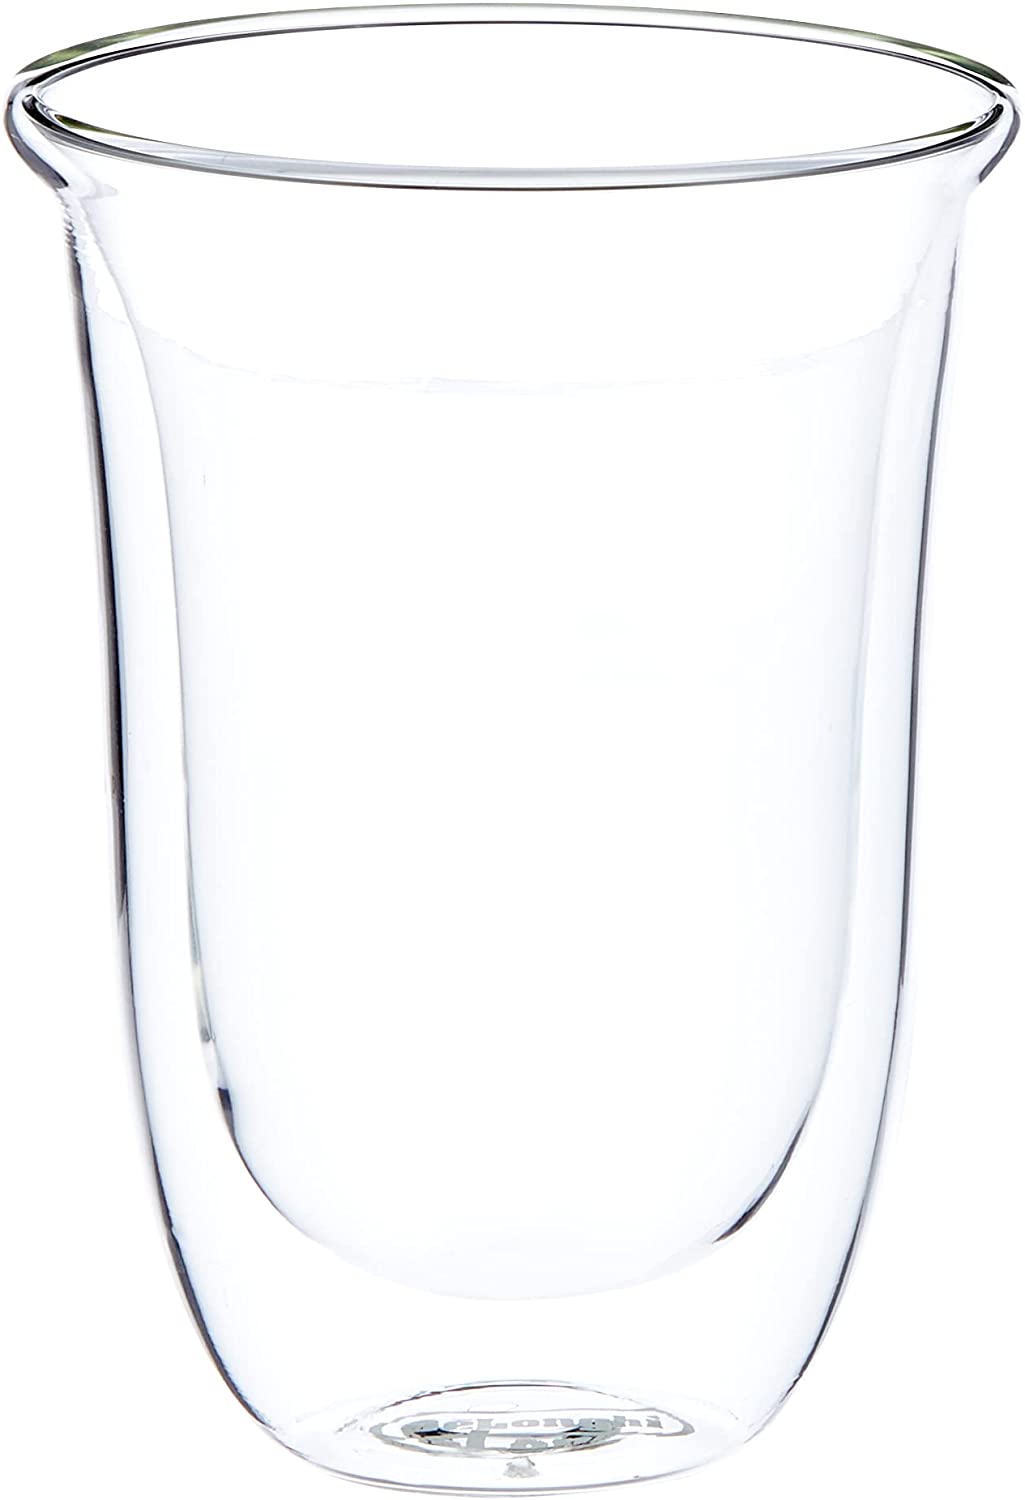 Delonghi 5513214611 Latte Macchiato Thermo Glasses - Pack of 2